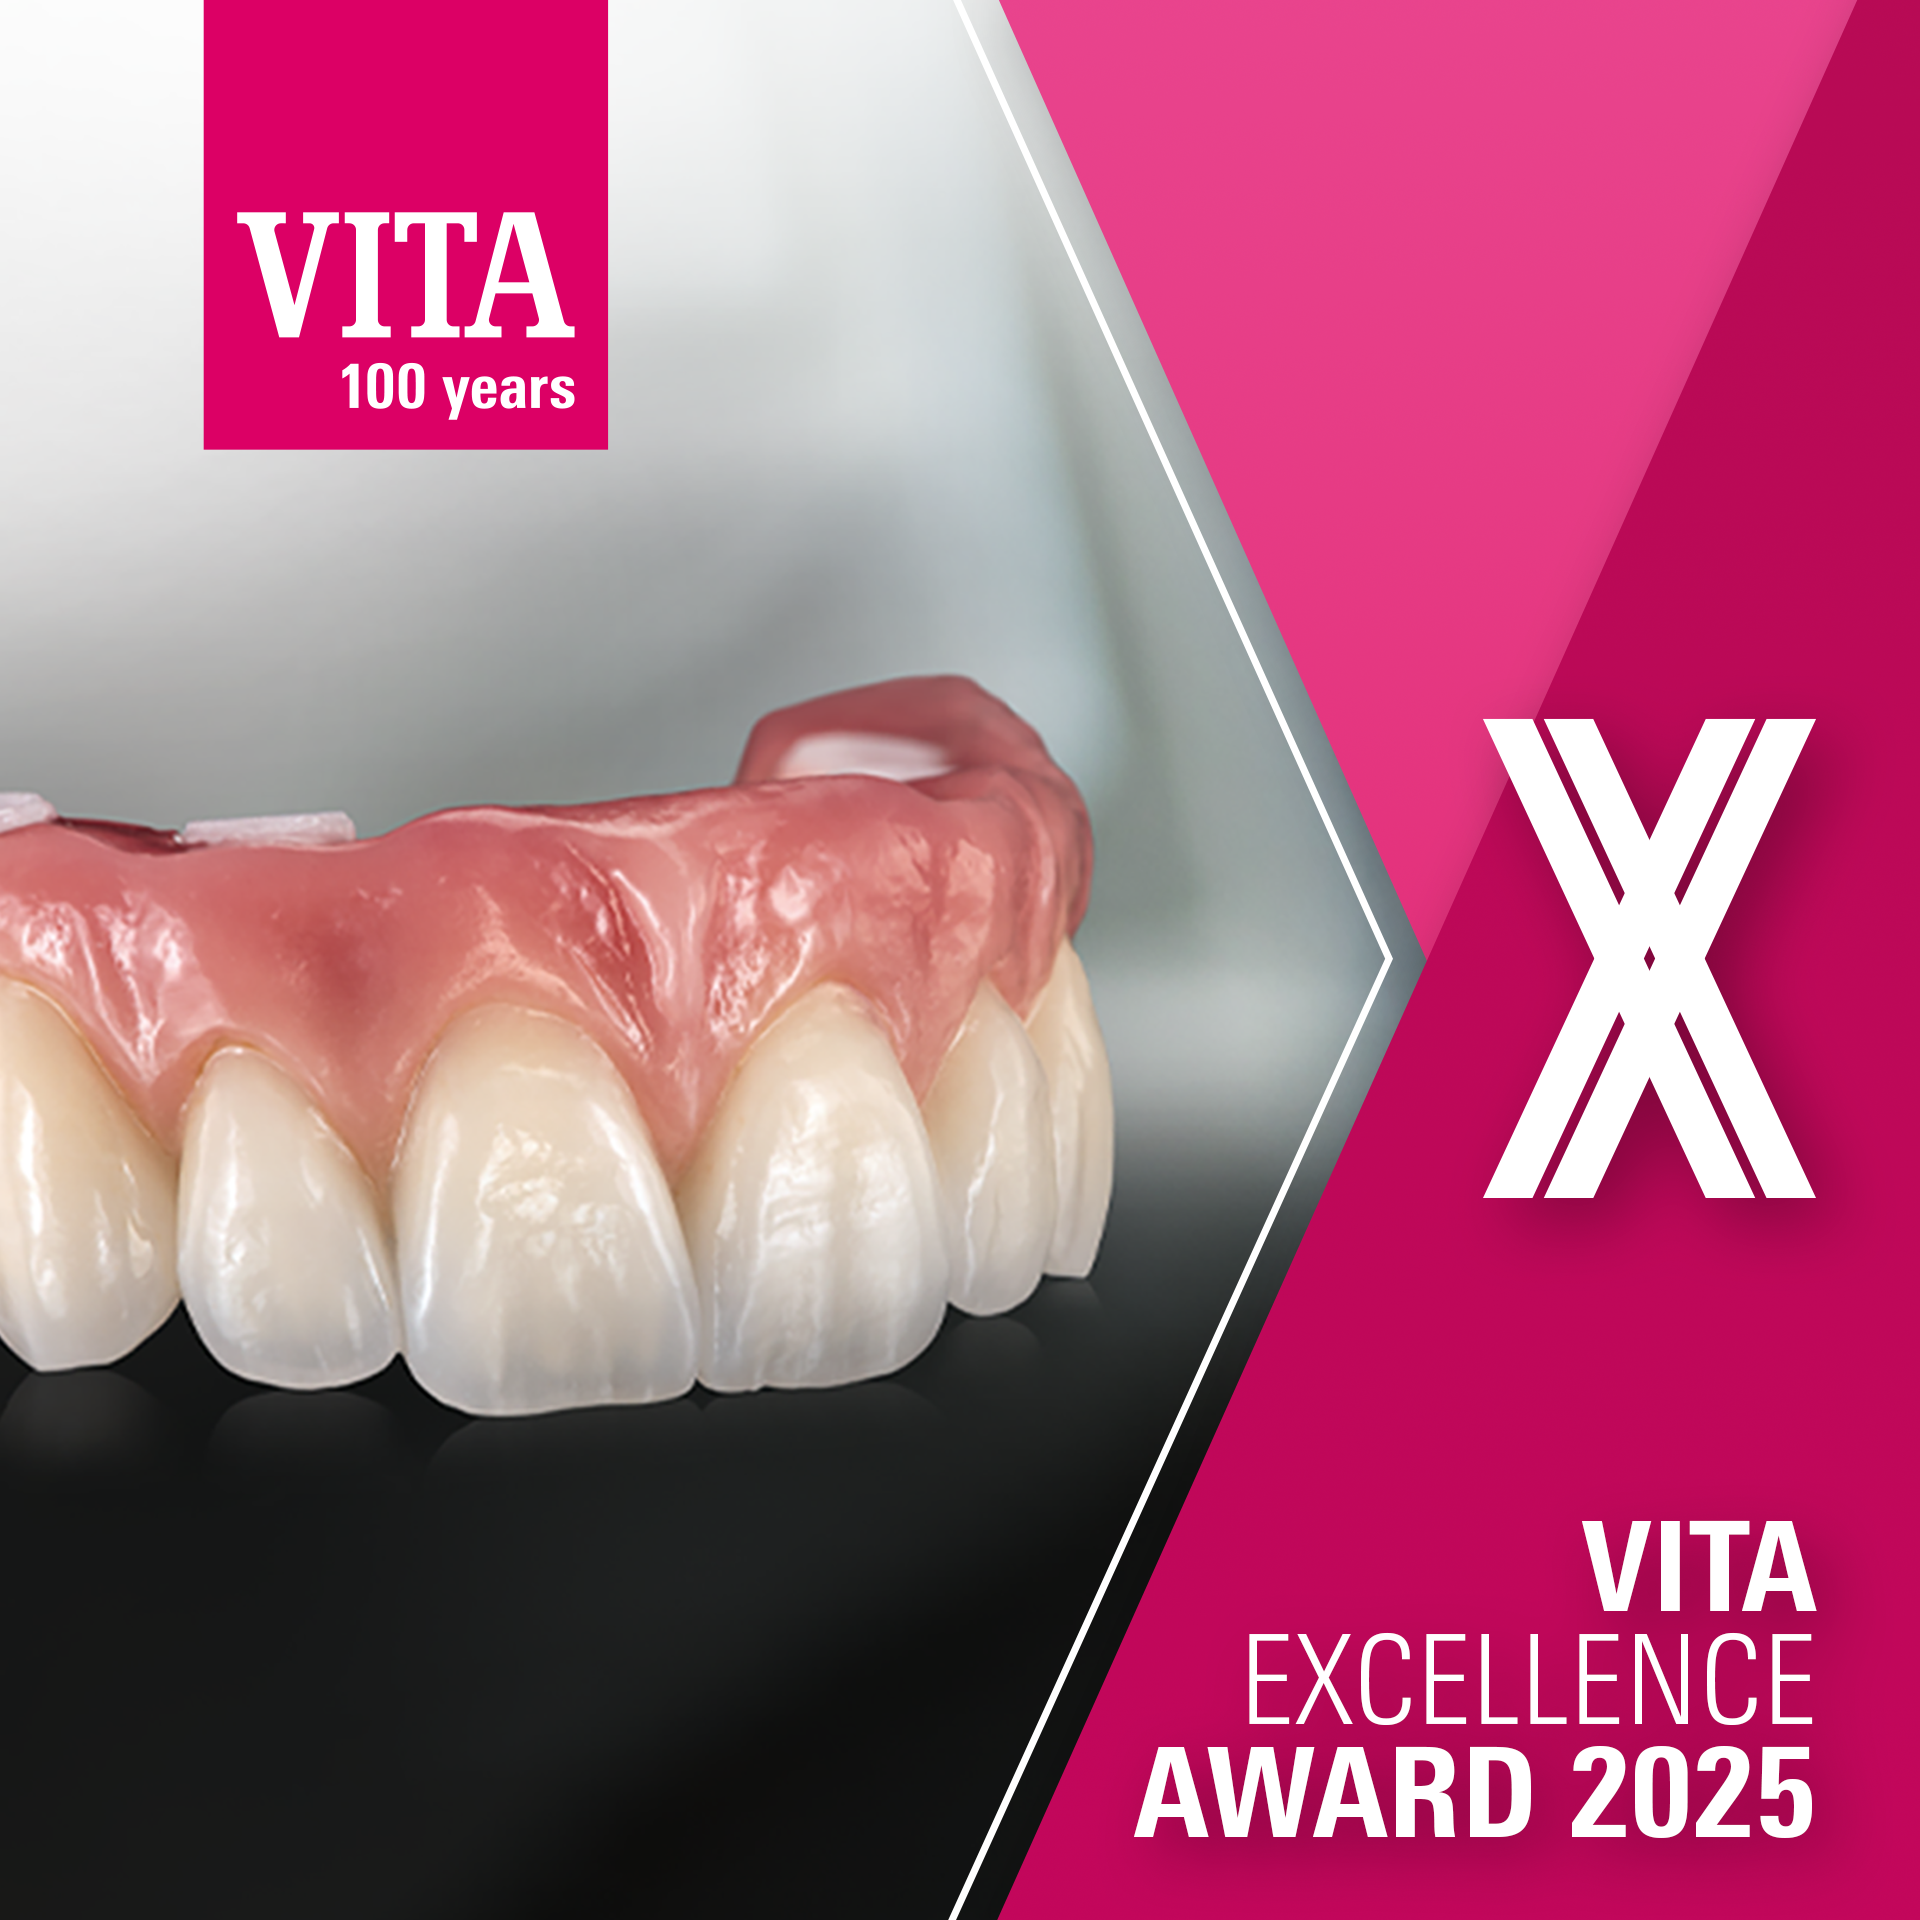 VITA Excellence Award 2025